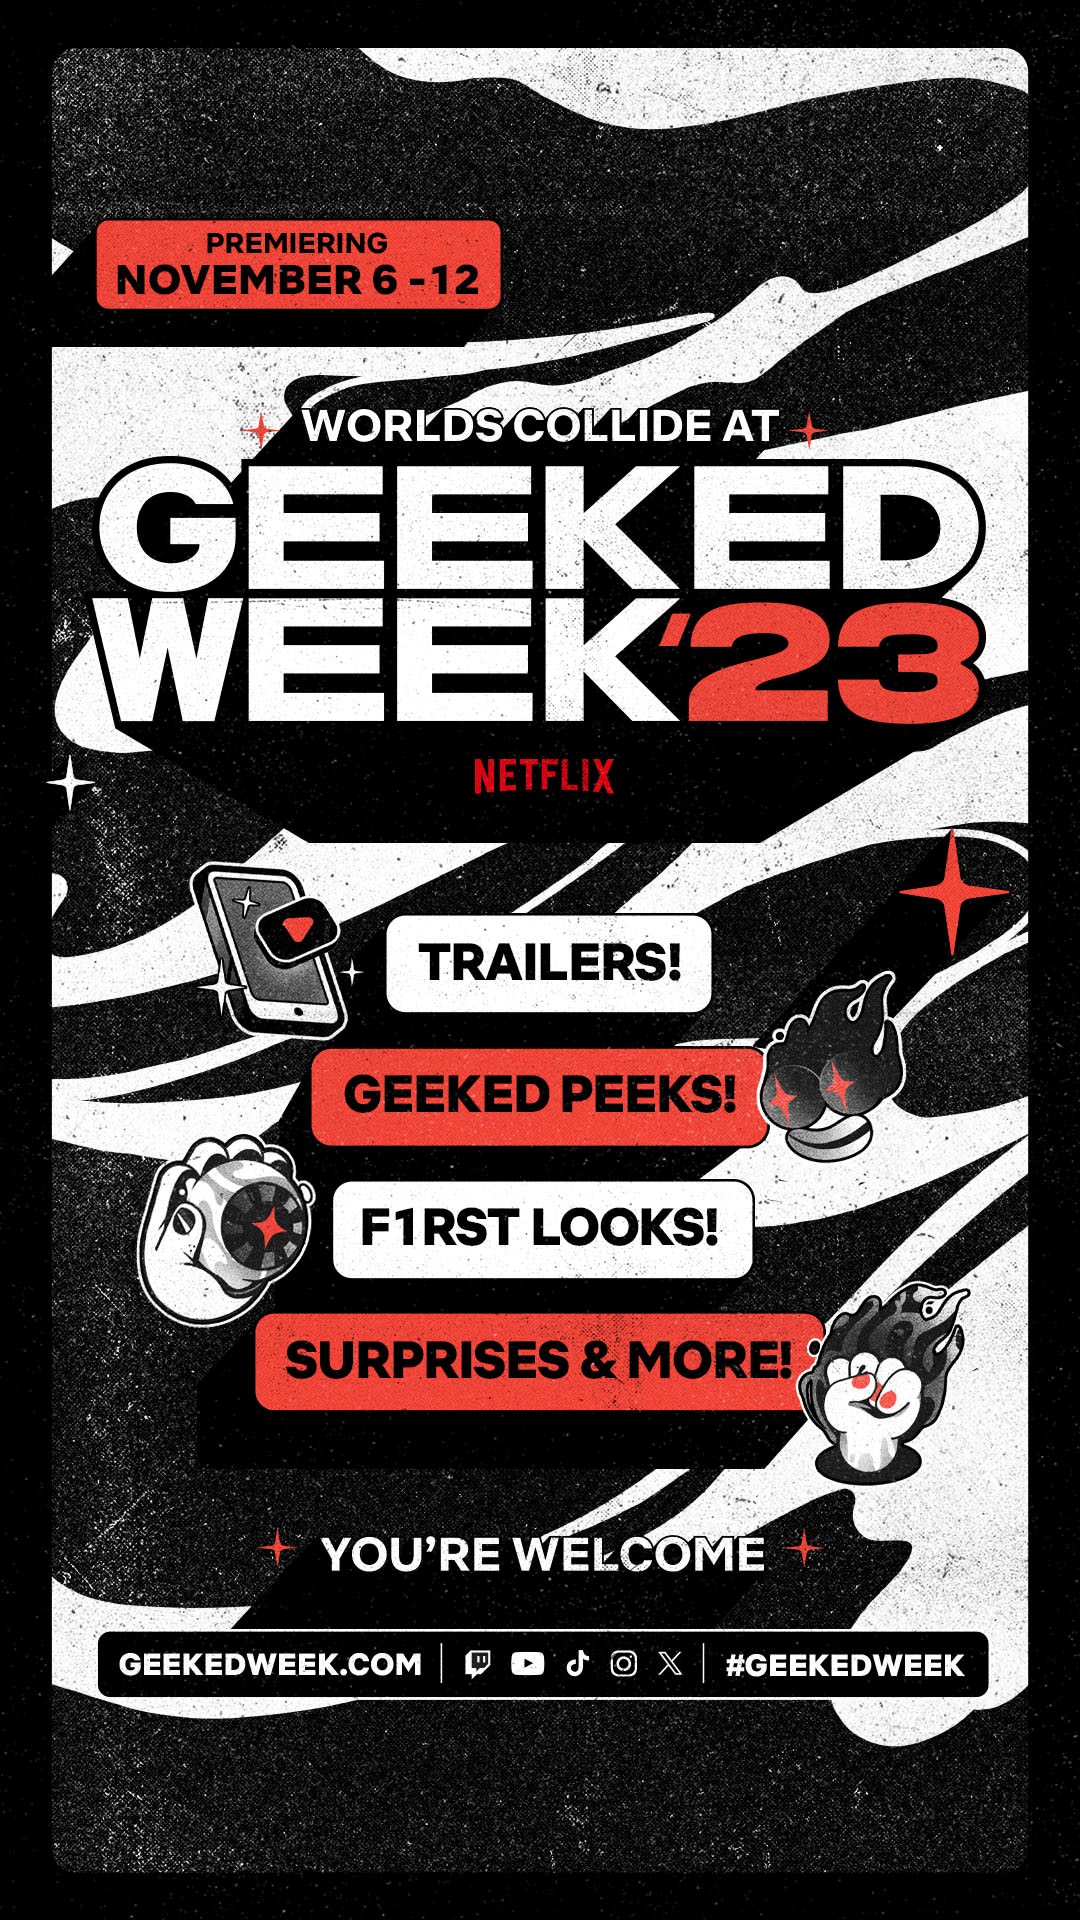 Netflix非常癮迷週Geeked Week